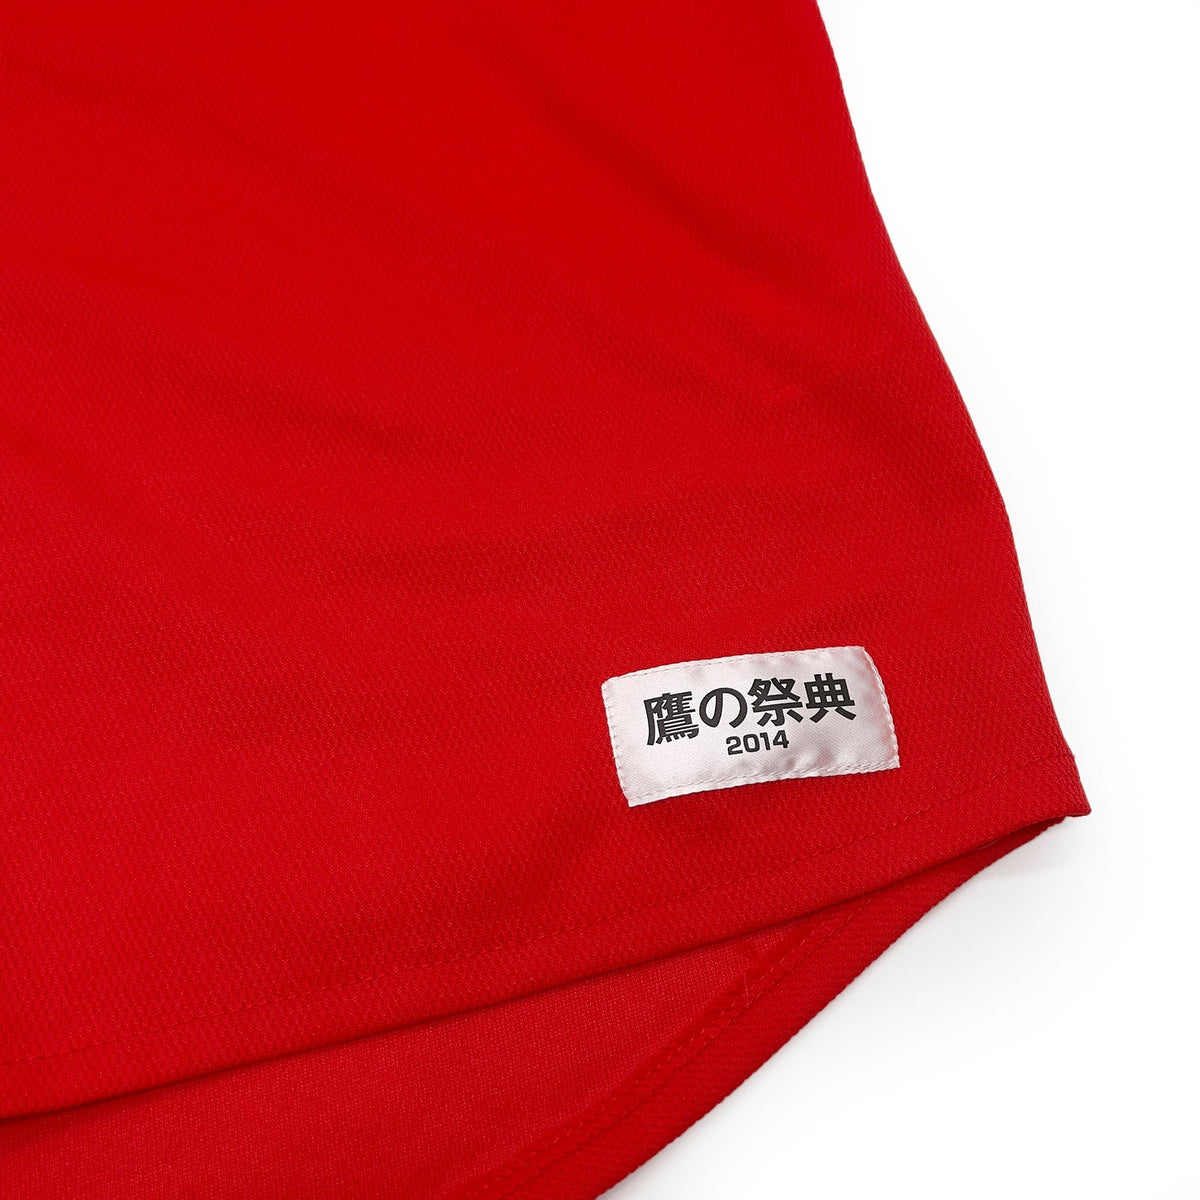 Limited Retro Japan Softbank Hawks Baseball Jersey 2014 Red - Sugoi JDM